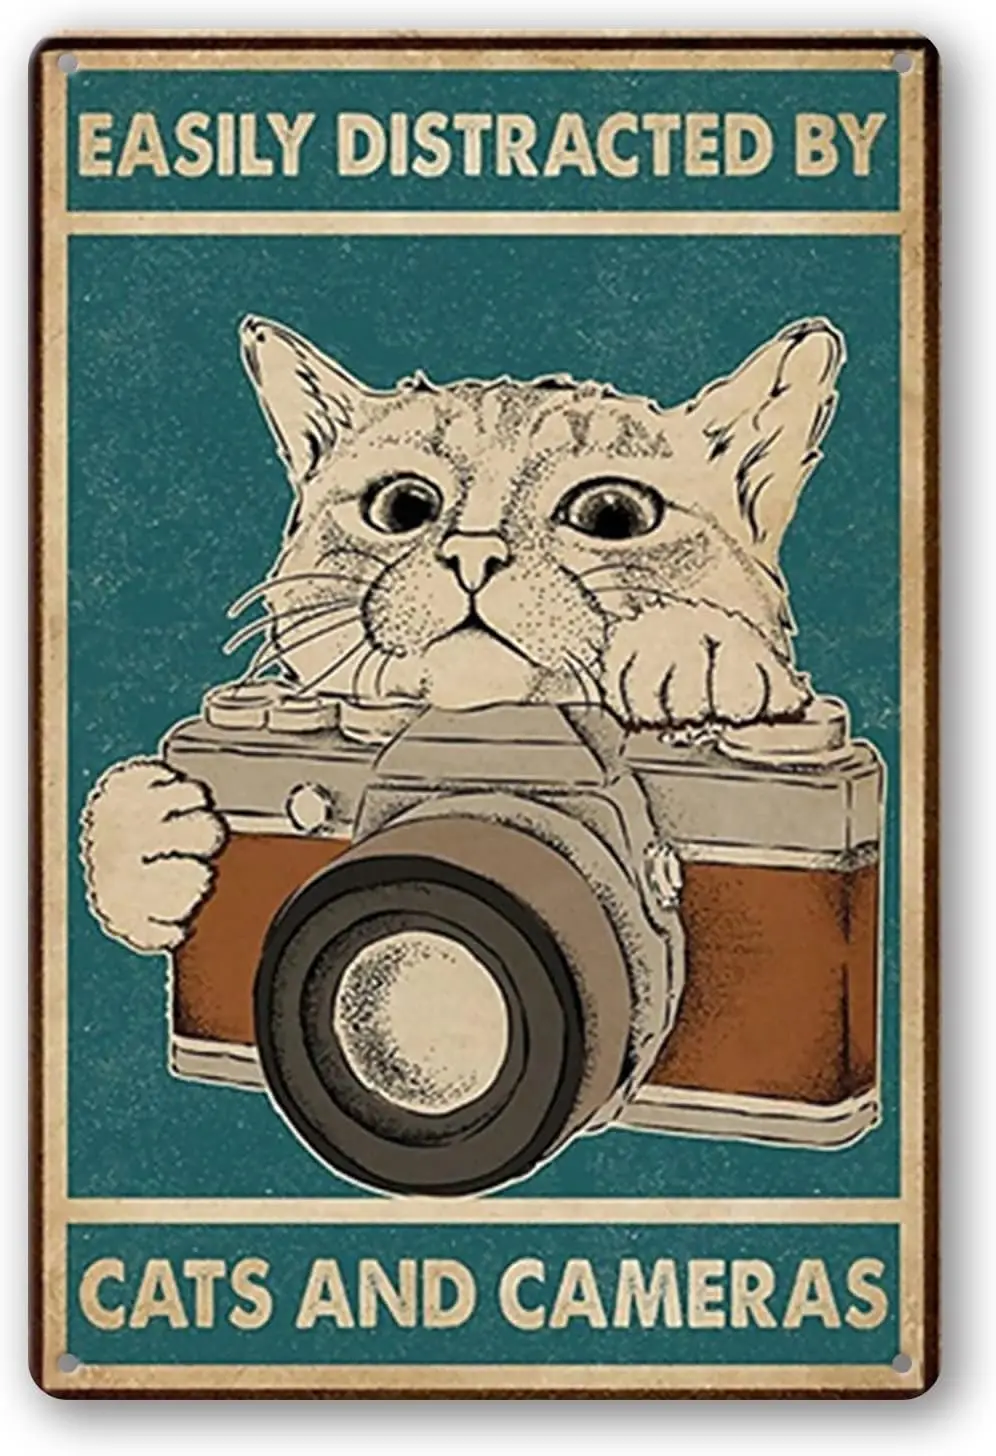 

Легко отвлекается с кошками и камерами, забавный жестяной знак, металлический постер для украшения стен бара, паба, столовой, кафе, домашнего декора